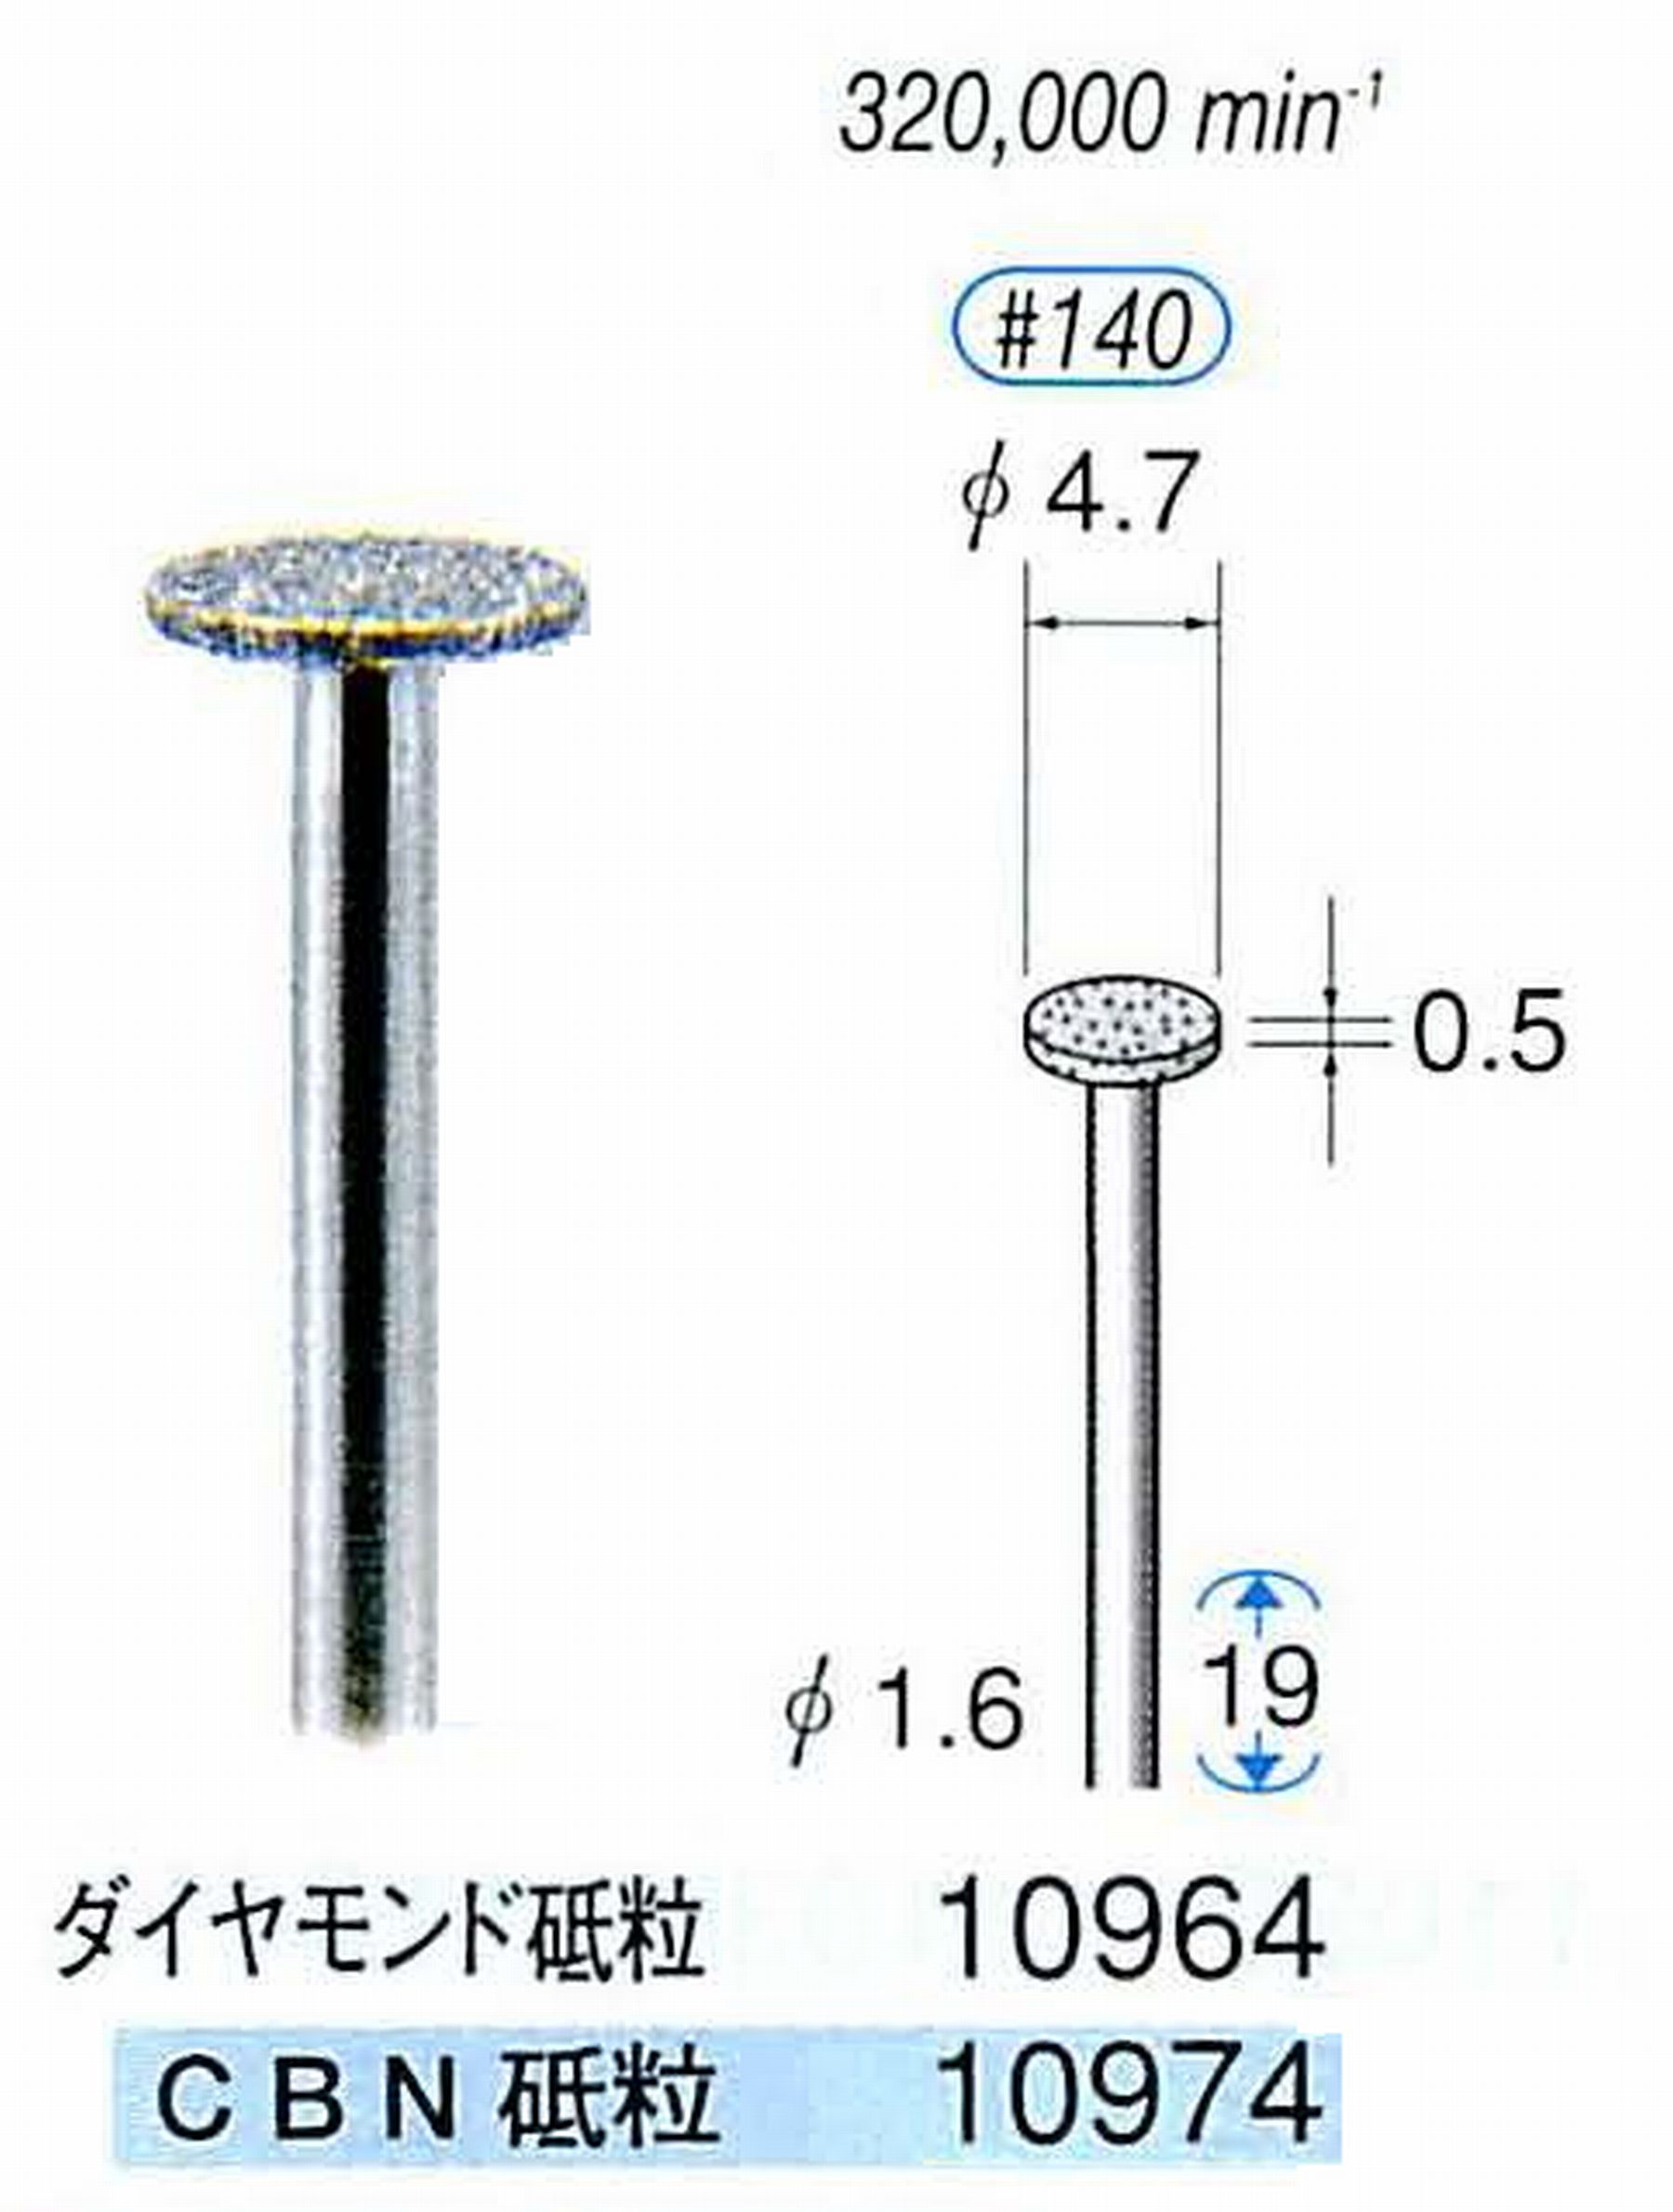 ナカニシ/NAKANISHI 電着ダイヤモンドバー(ミニチュアタイプ)ダイヤモンド砥粒 軸径(シャンク)φ1.6mm 10964